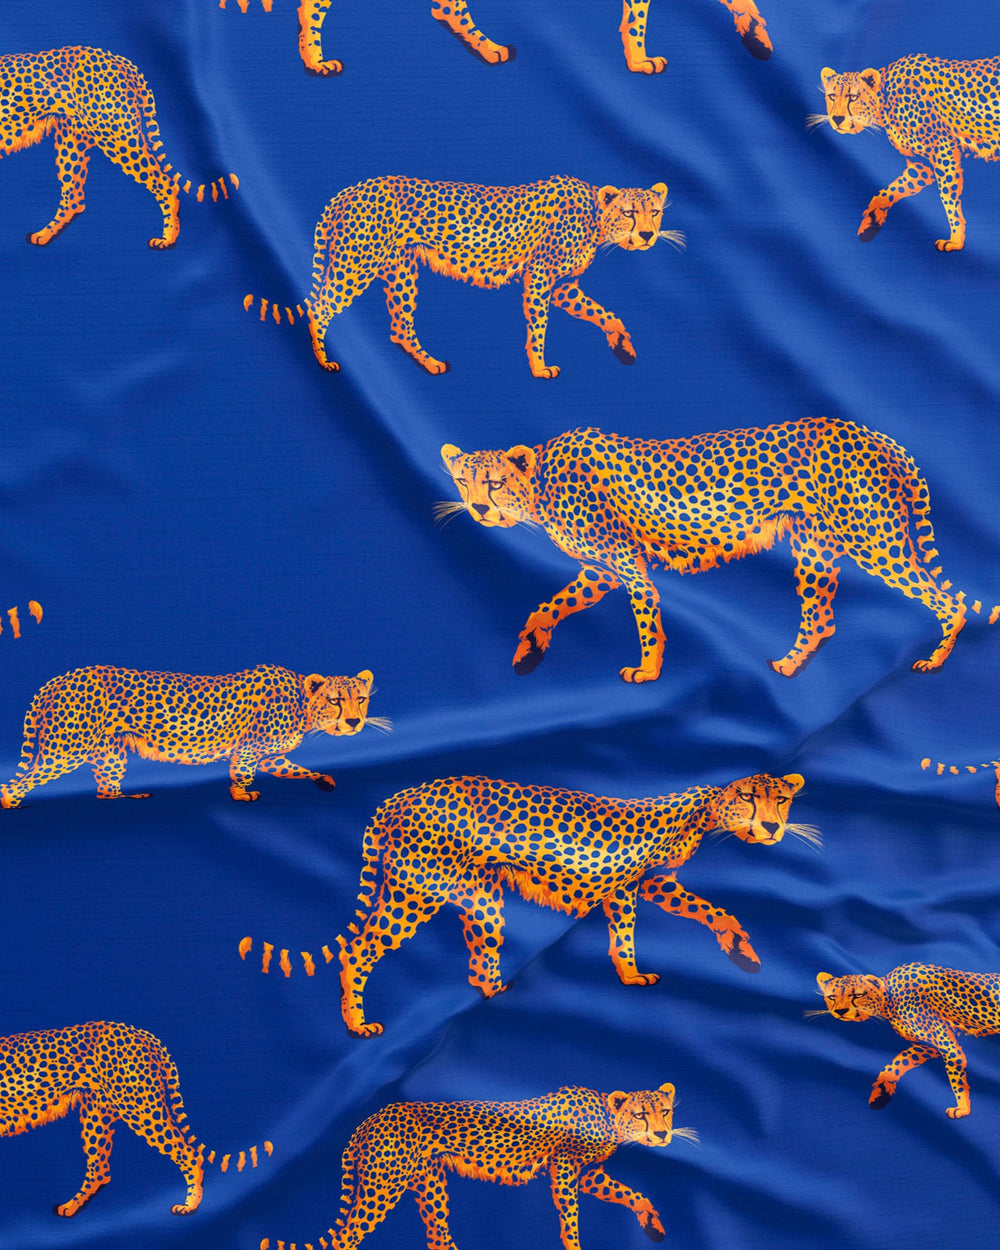 Boys pyjamas - Blue Cheetah